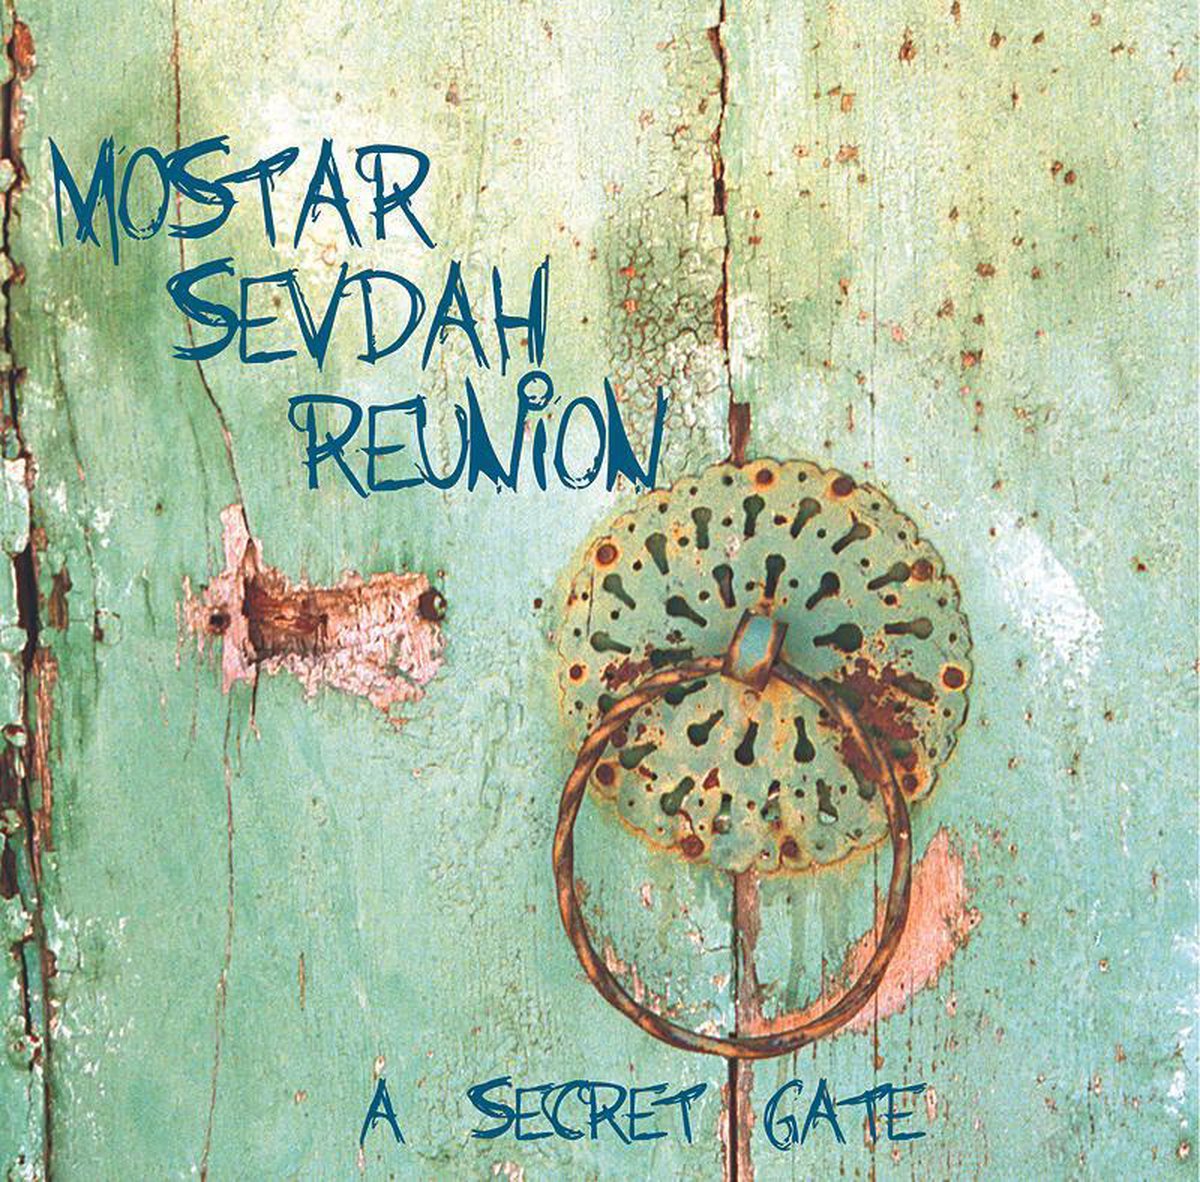 Mostar Sevdah Reunion - A Secret Gate (CD) (Deluxe Edition) - Mostar Sevdah Reunion